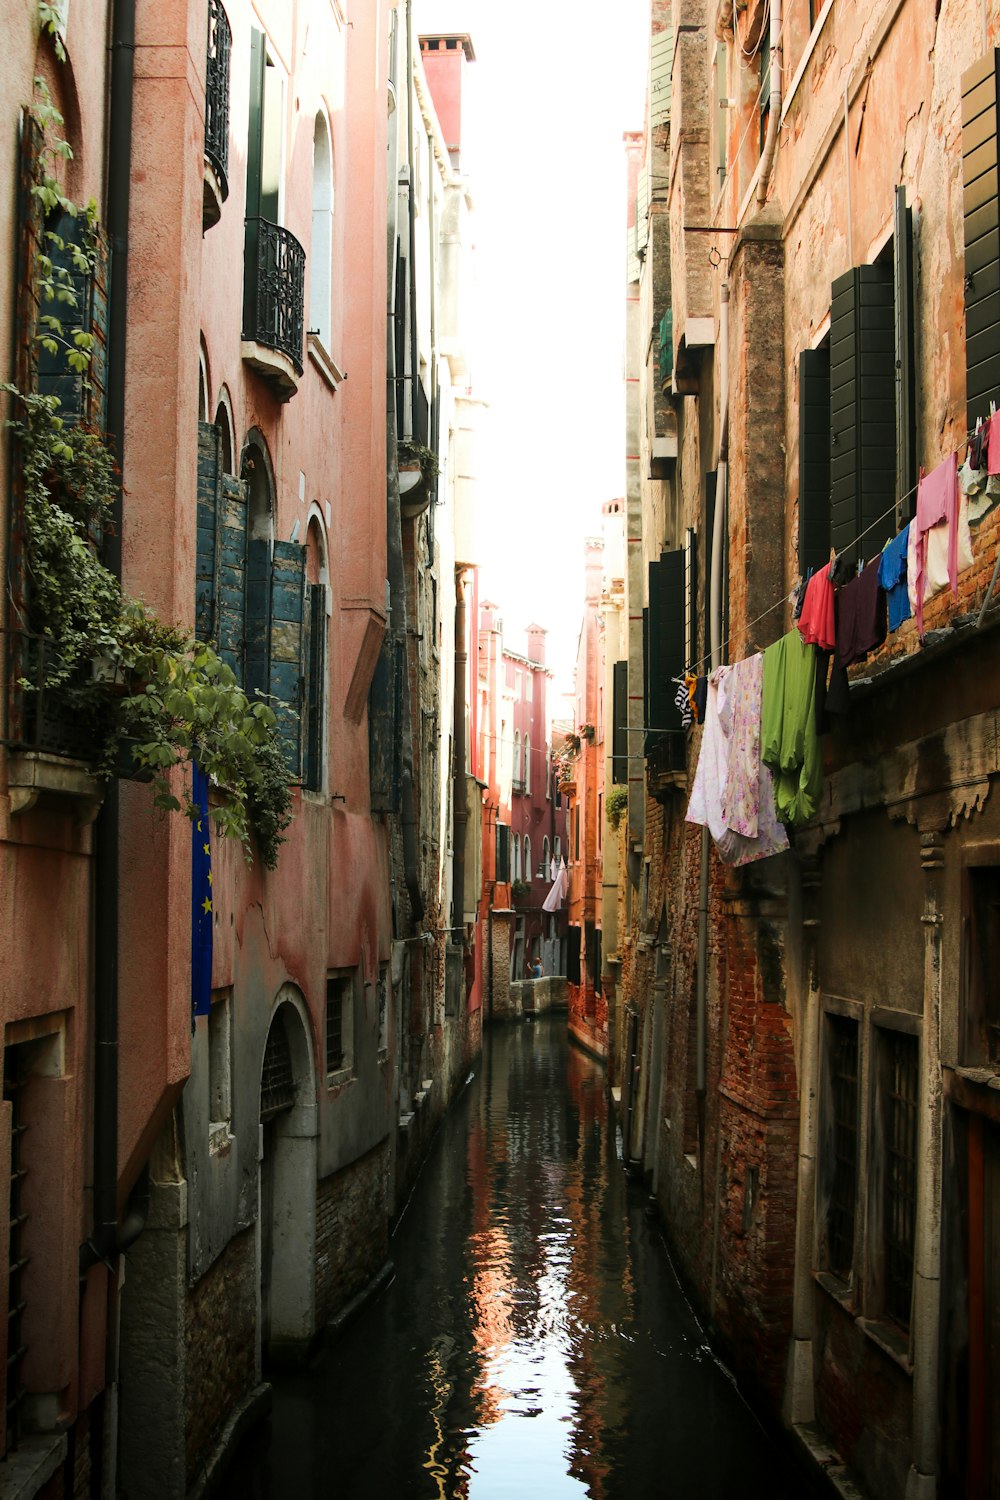 a canal runs through a narrow city area